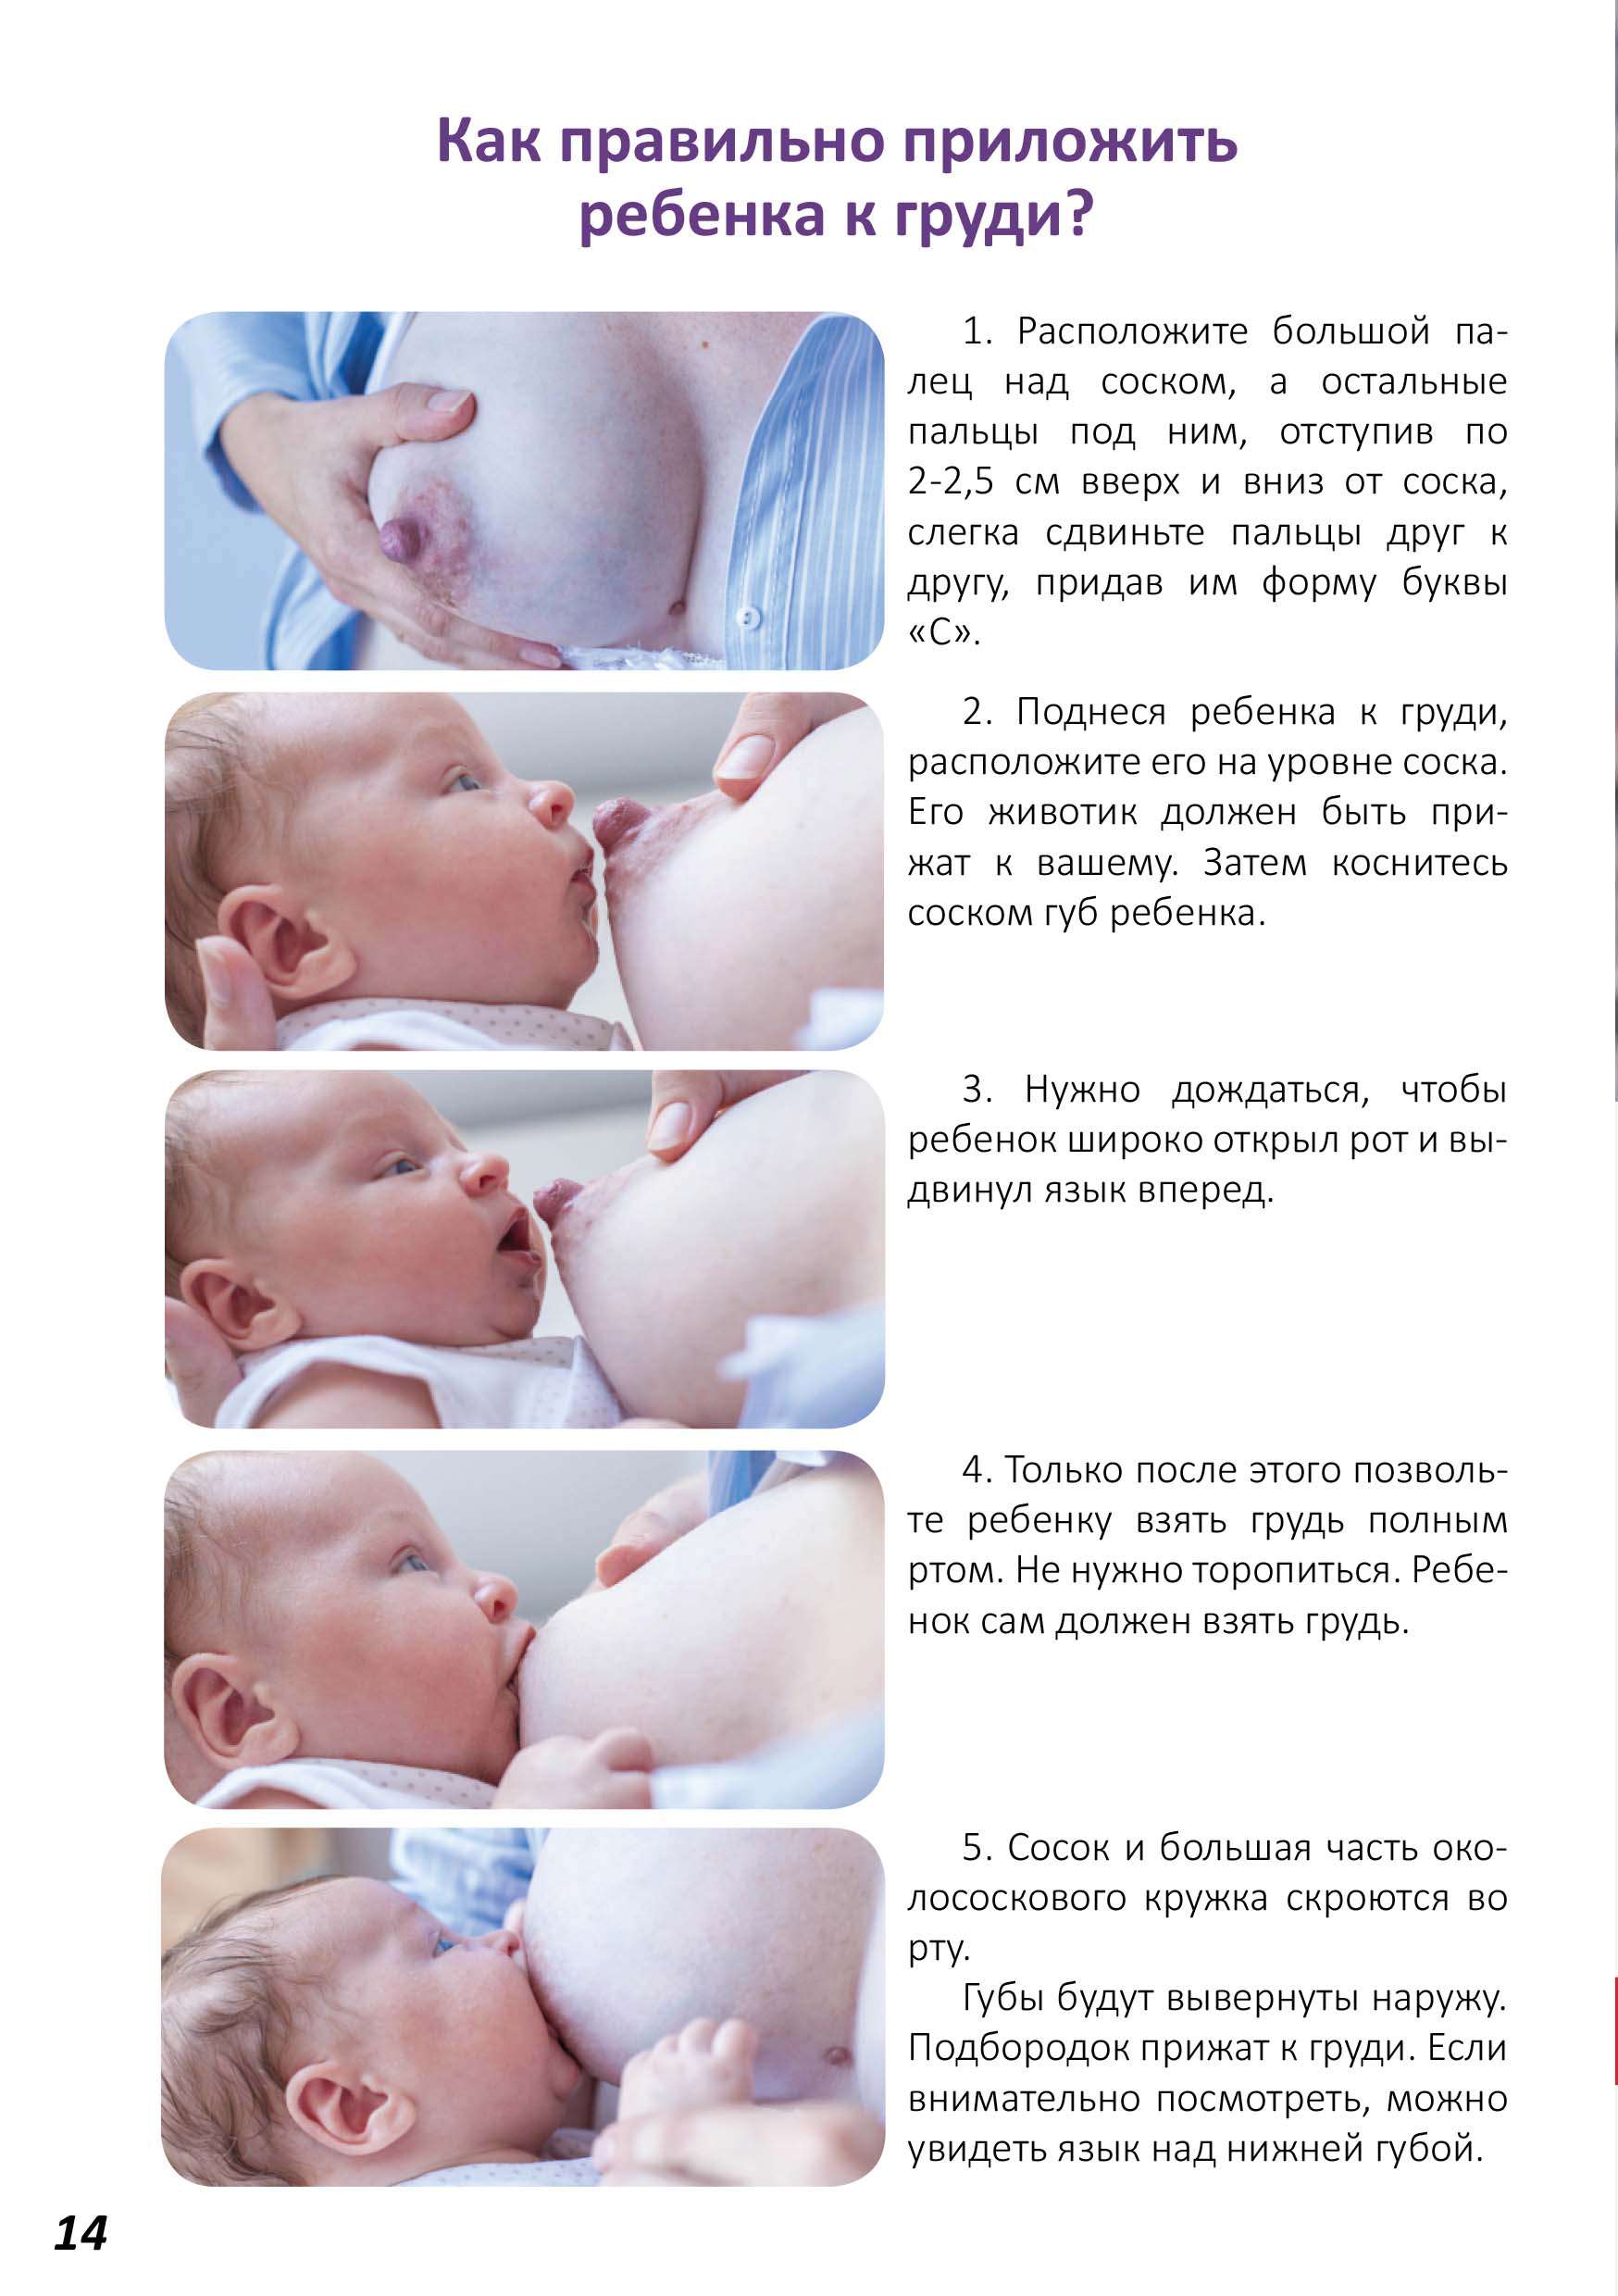 Кормление новорожденного грудным молоком: позы и сложности ГВ